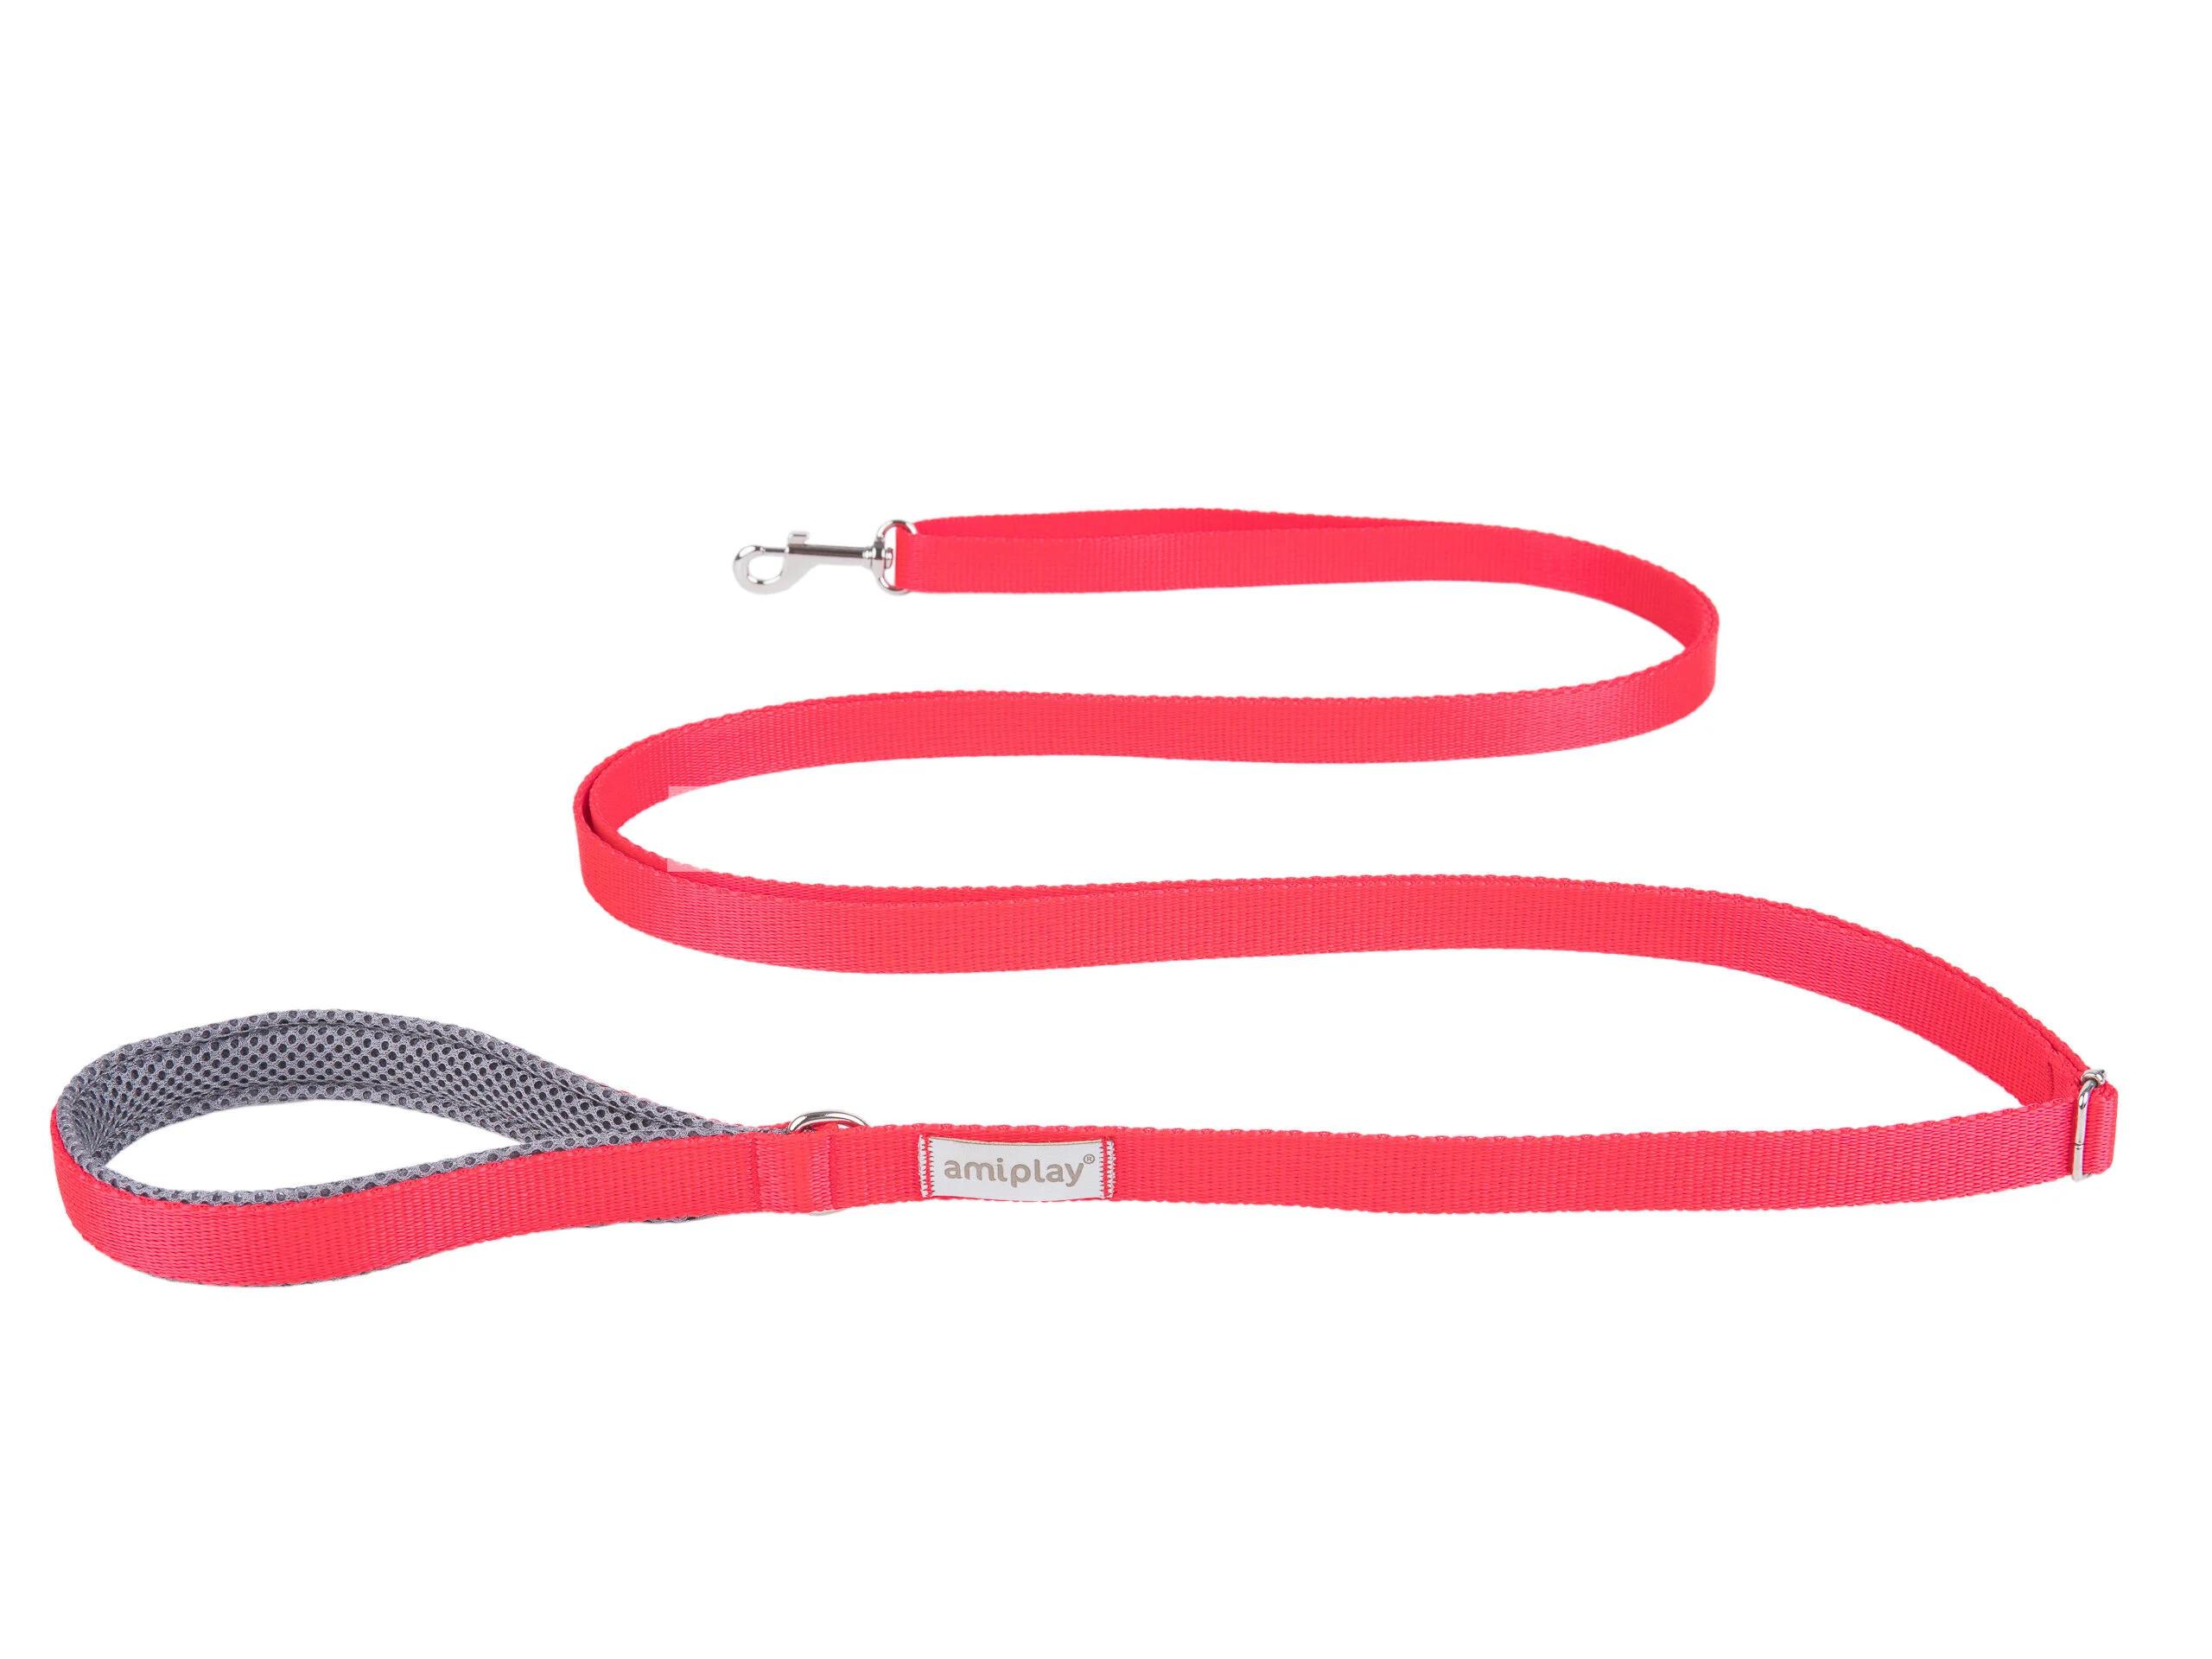 Поводок Amiplay Adjustable Leash easy fix. Цвет: Красный. Размер S. Длина 160-300 x 1.5 см.